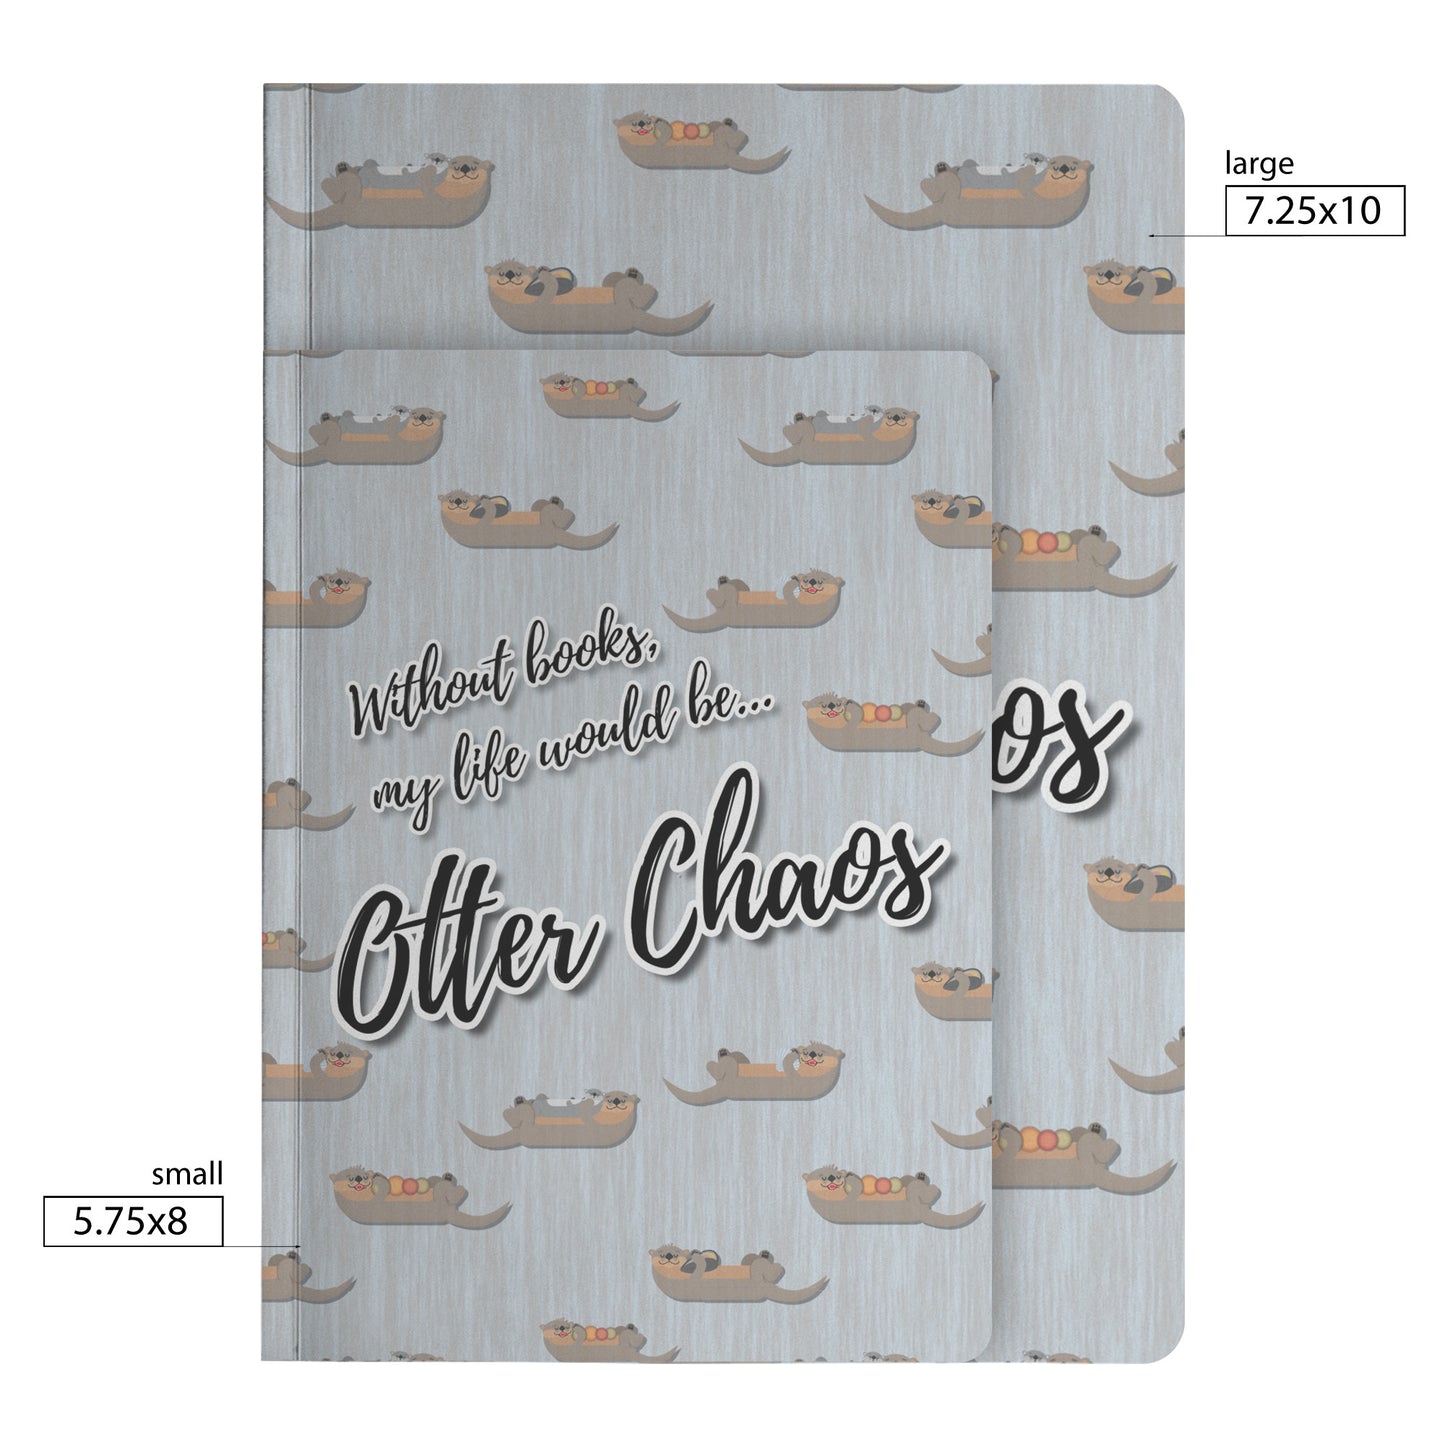 Otter Chaos Notebook